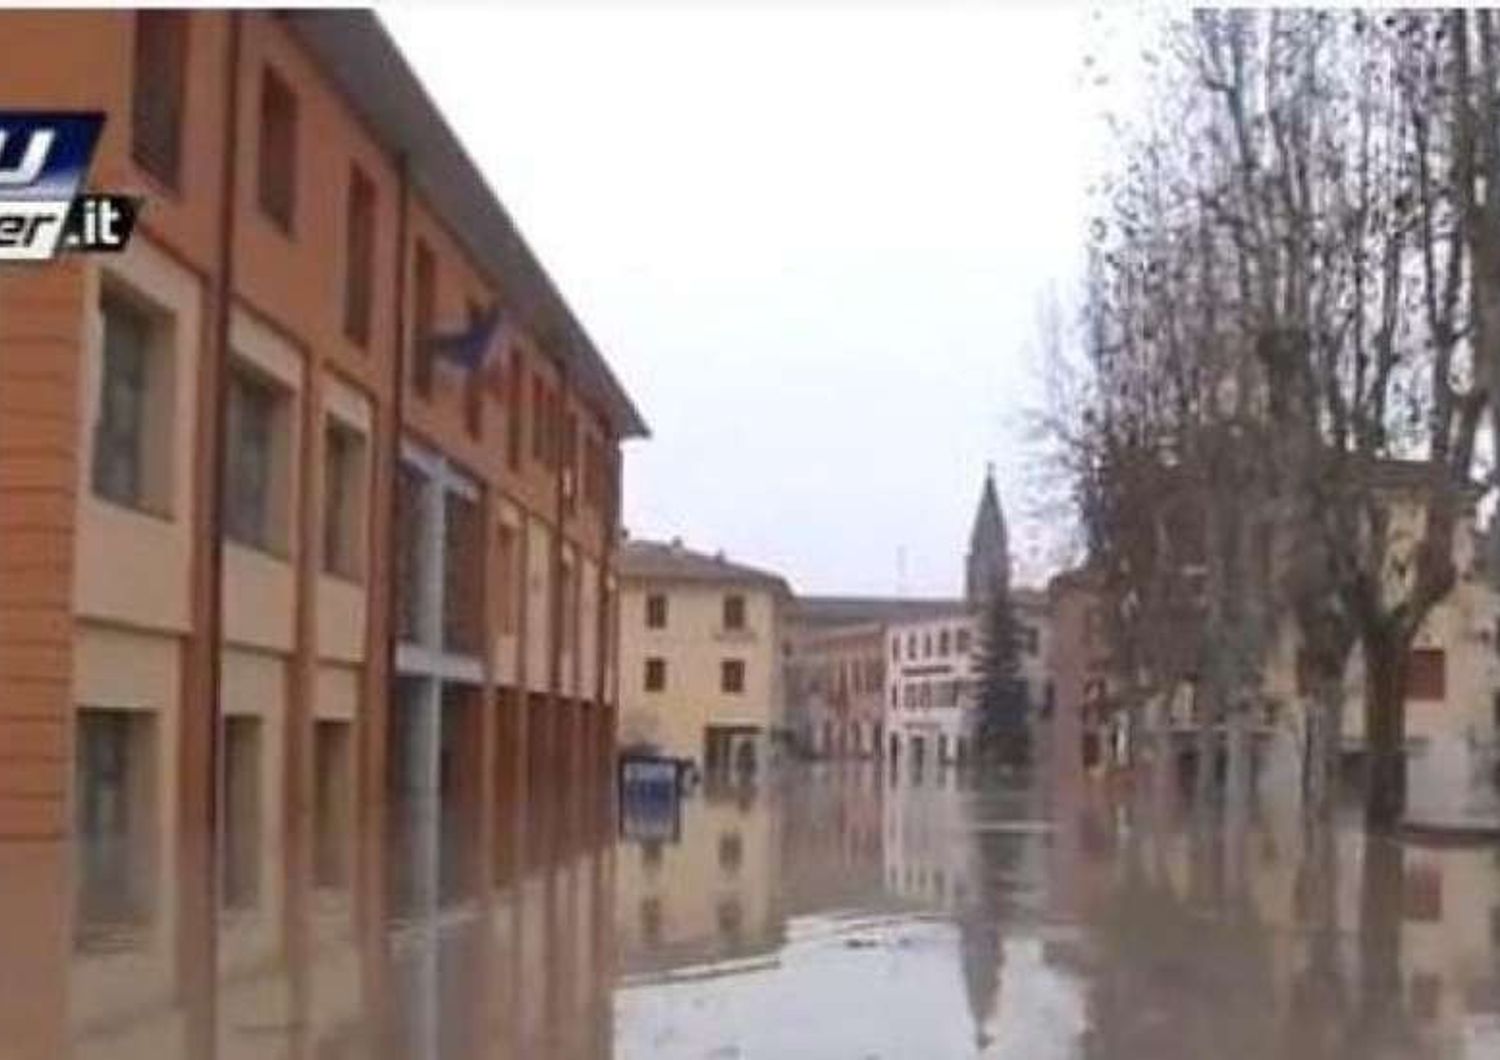 Alluvione nel Modenese: 80 milioni per danni anche tromba d'aria